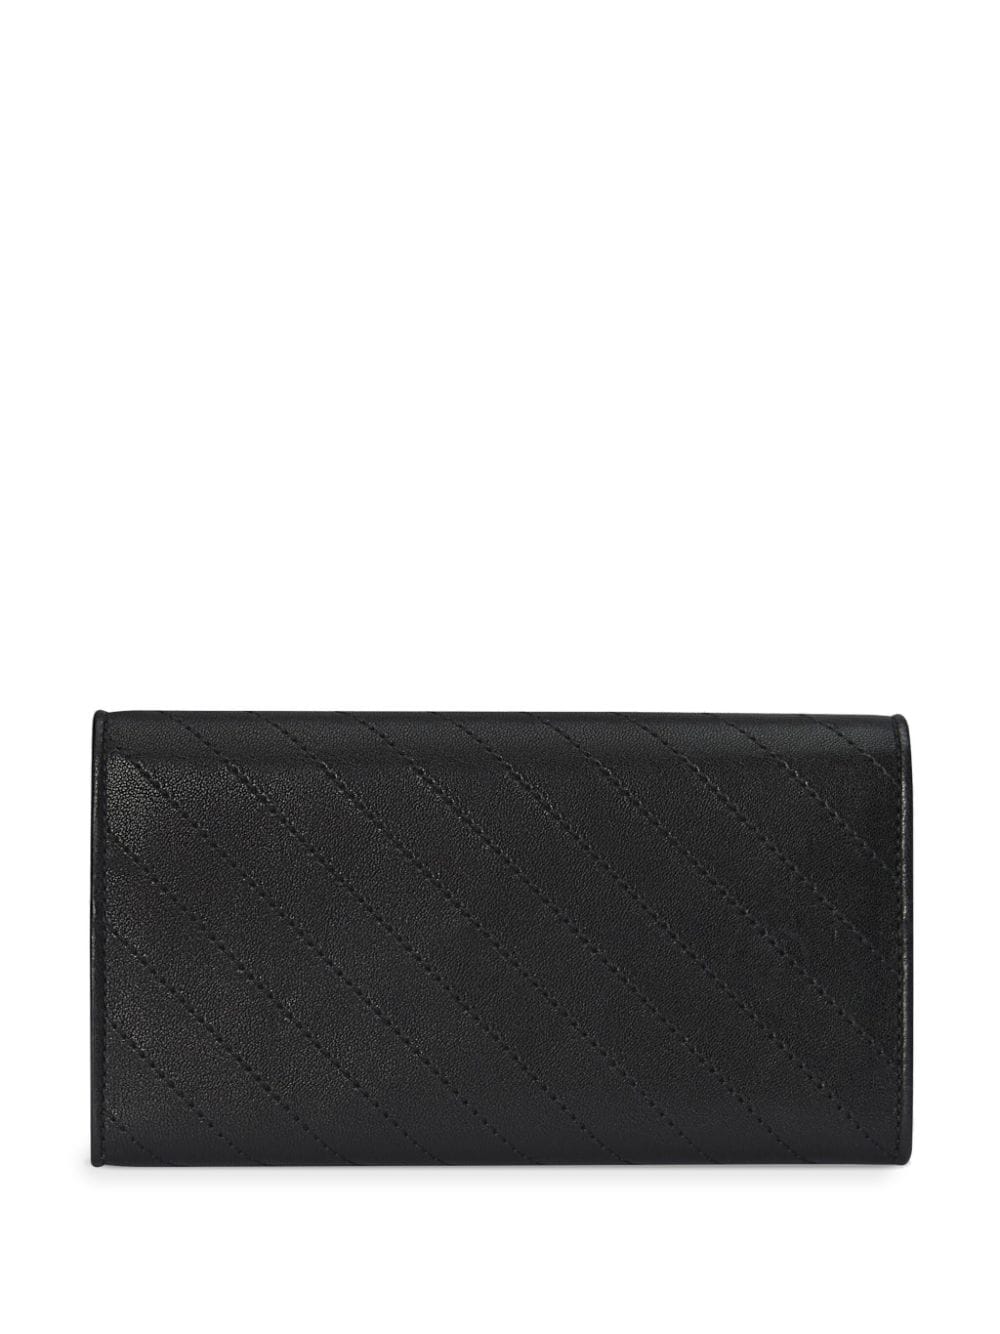 Gucci Blondie portemonnee - Zwart